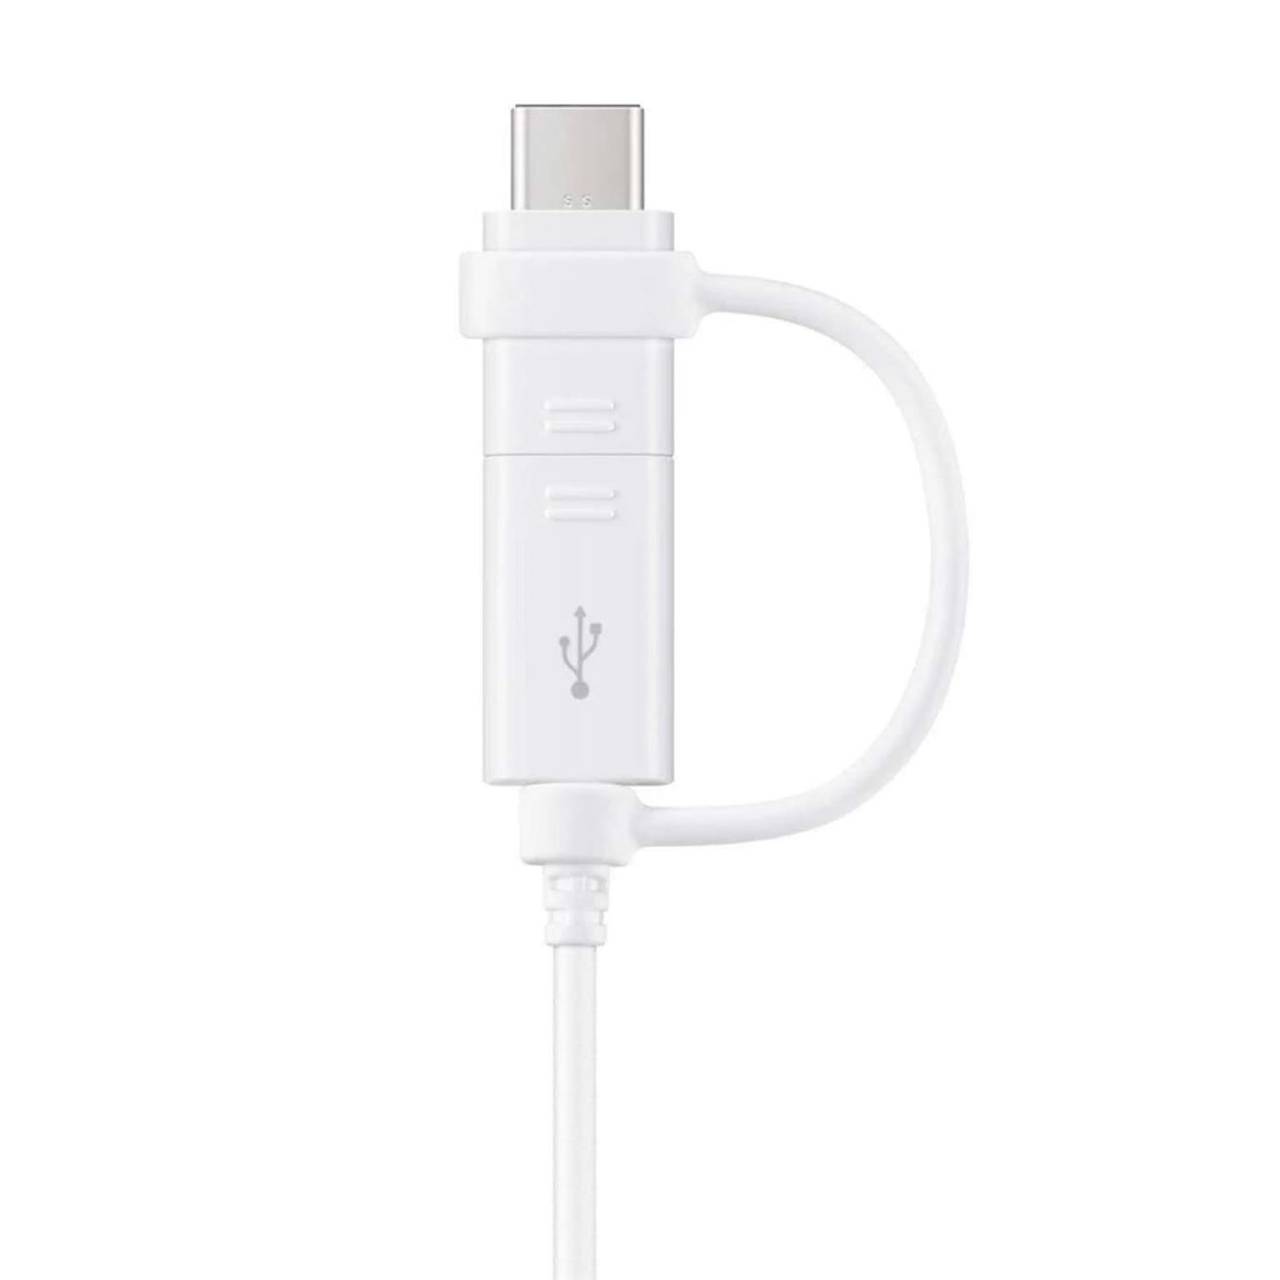 Samsung Combo-Kabel – USB Typ-C & Micro-USB, schnelle Datenübertragung, 2-in-1 Kabel